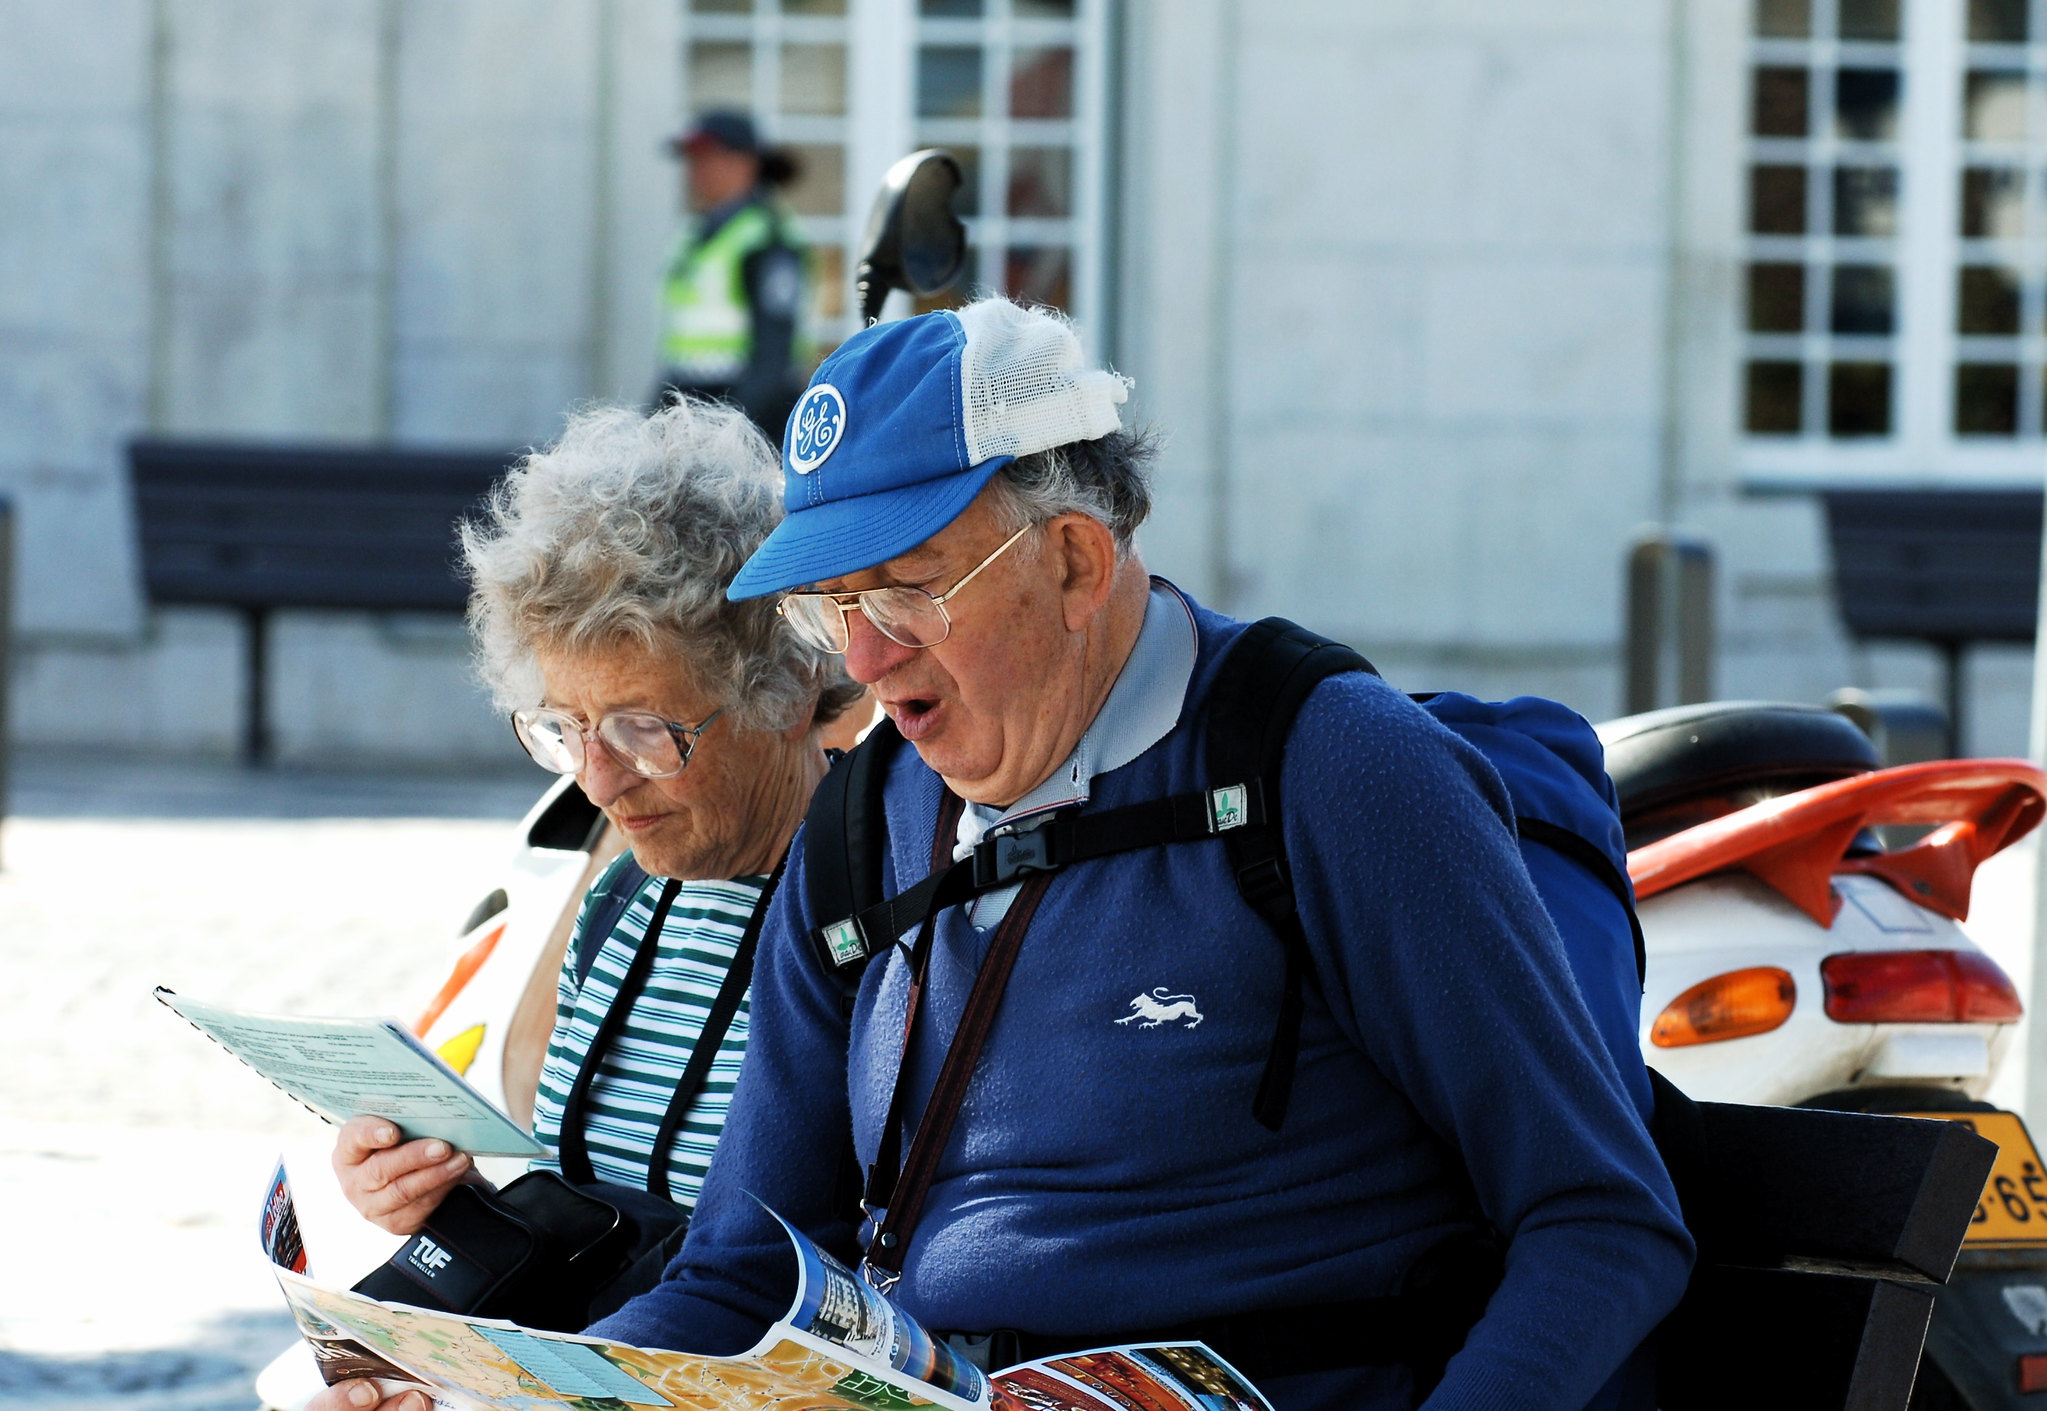 Un couple de personnes âgées faisant du tourisme ensemble | Source : flickr